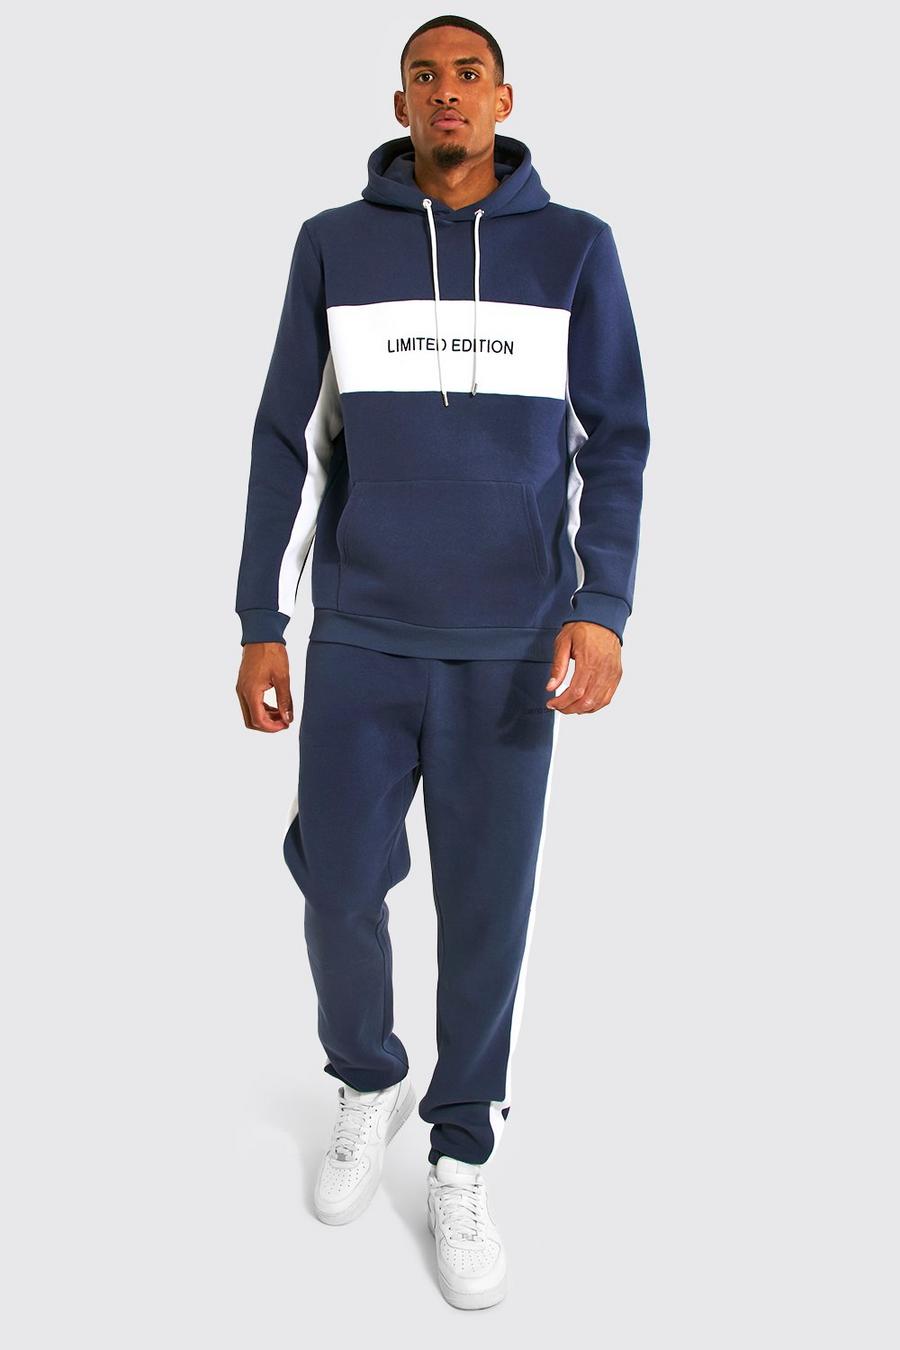 נייבי azul marino חליפת טרנינג עם קפוצ'ון וכיתוב Limited Edition, לגברים גבוהים